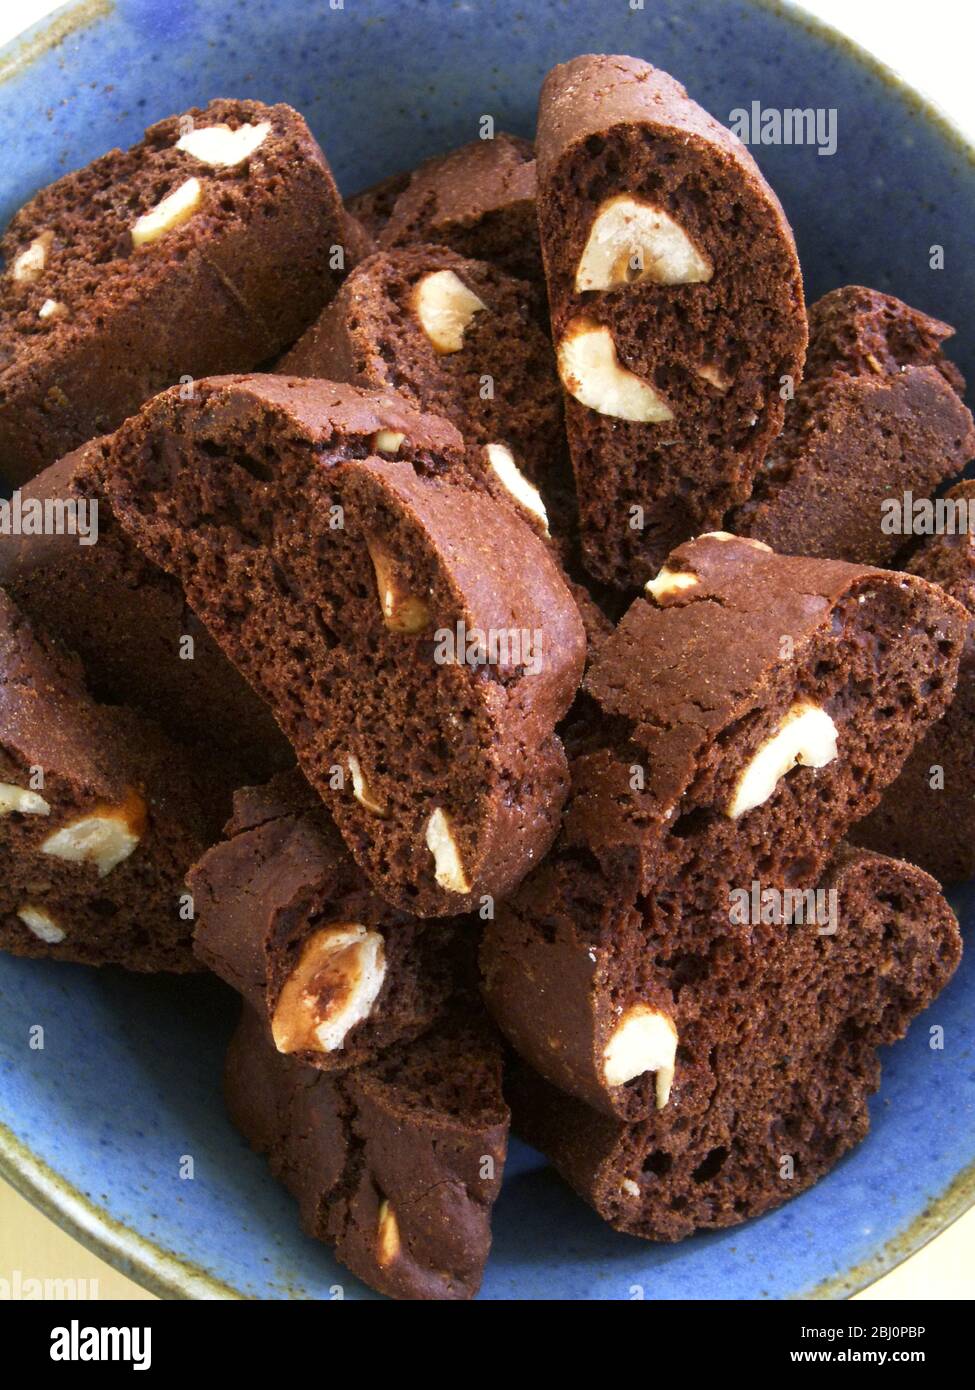 Schokolade und Mandel-Kekse in blauer Keramik-Schüssel - Stockfoto